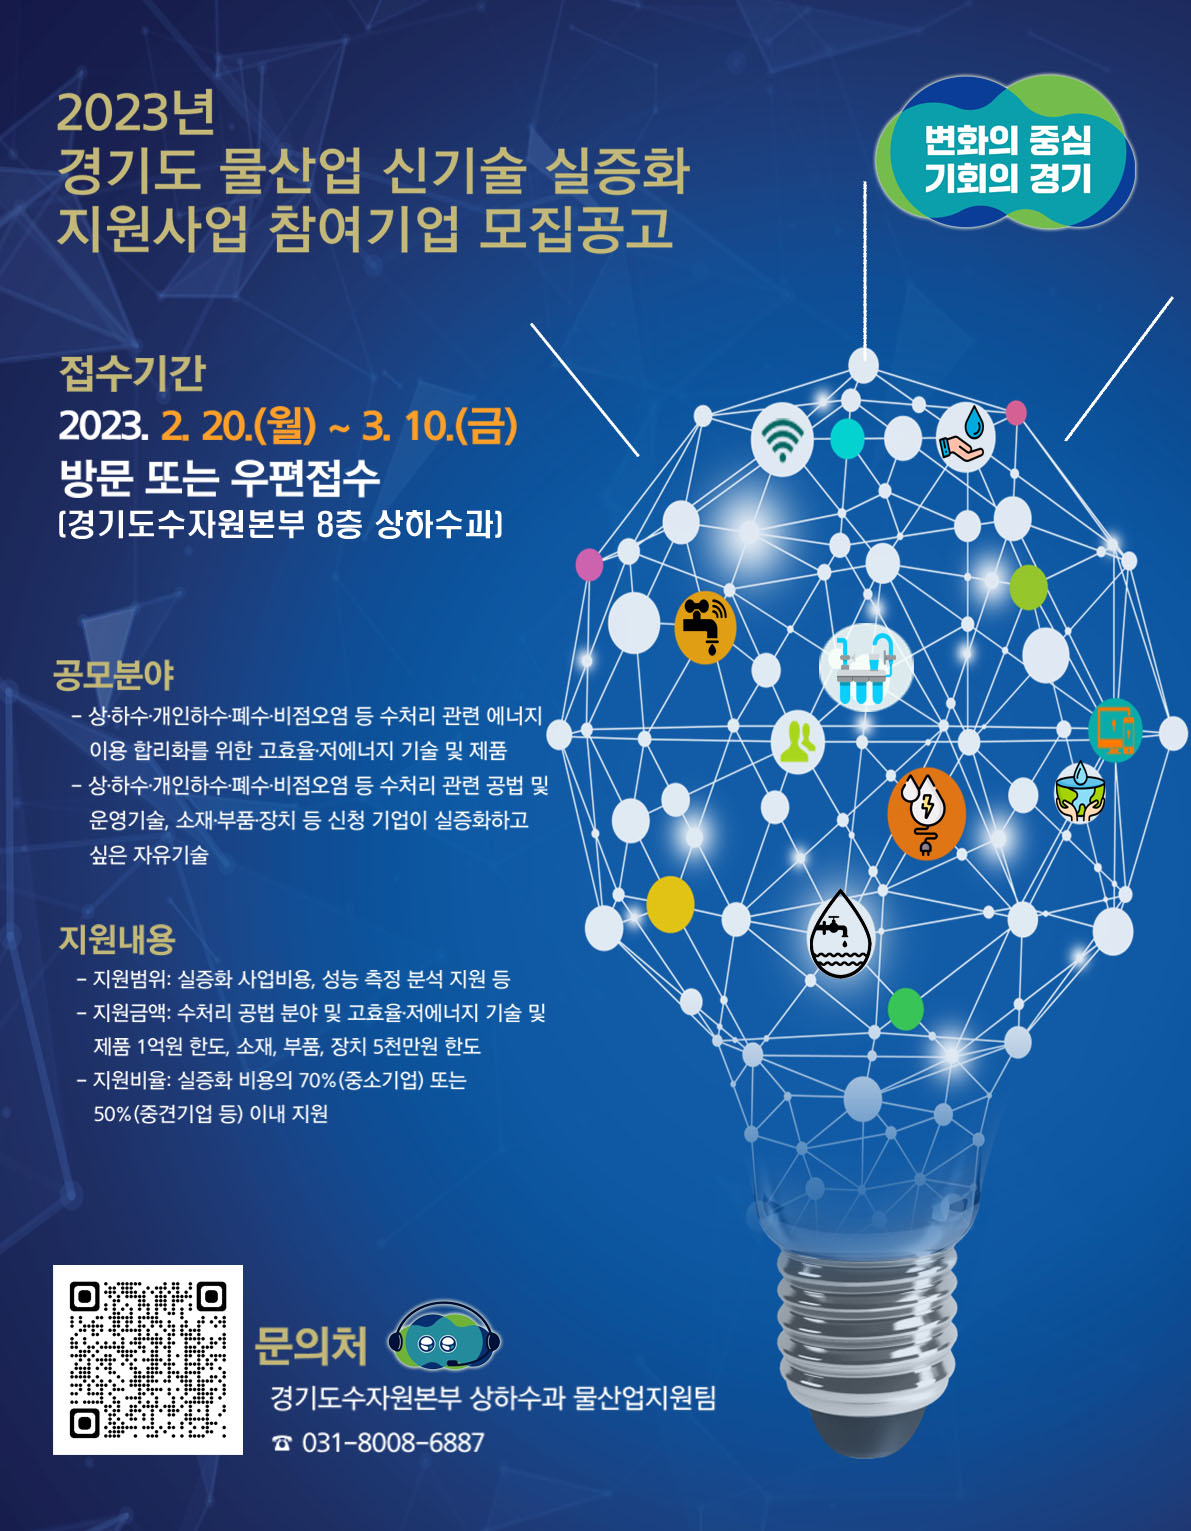 경기도 물산업 신기술 실증화 지원사업 참여기업 모집 포스터.jpg